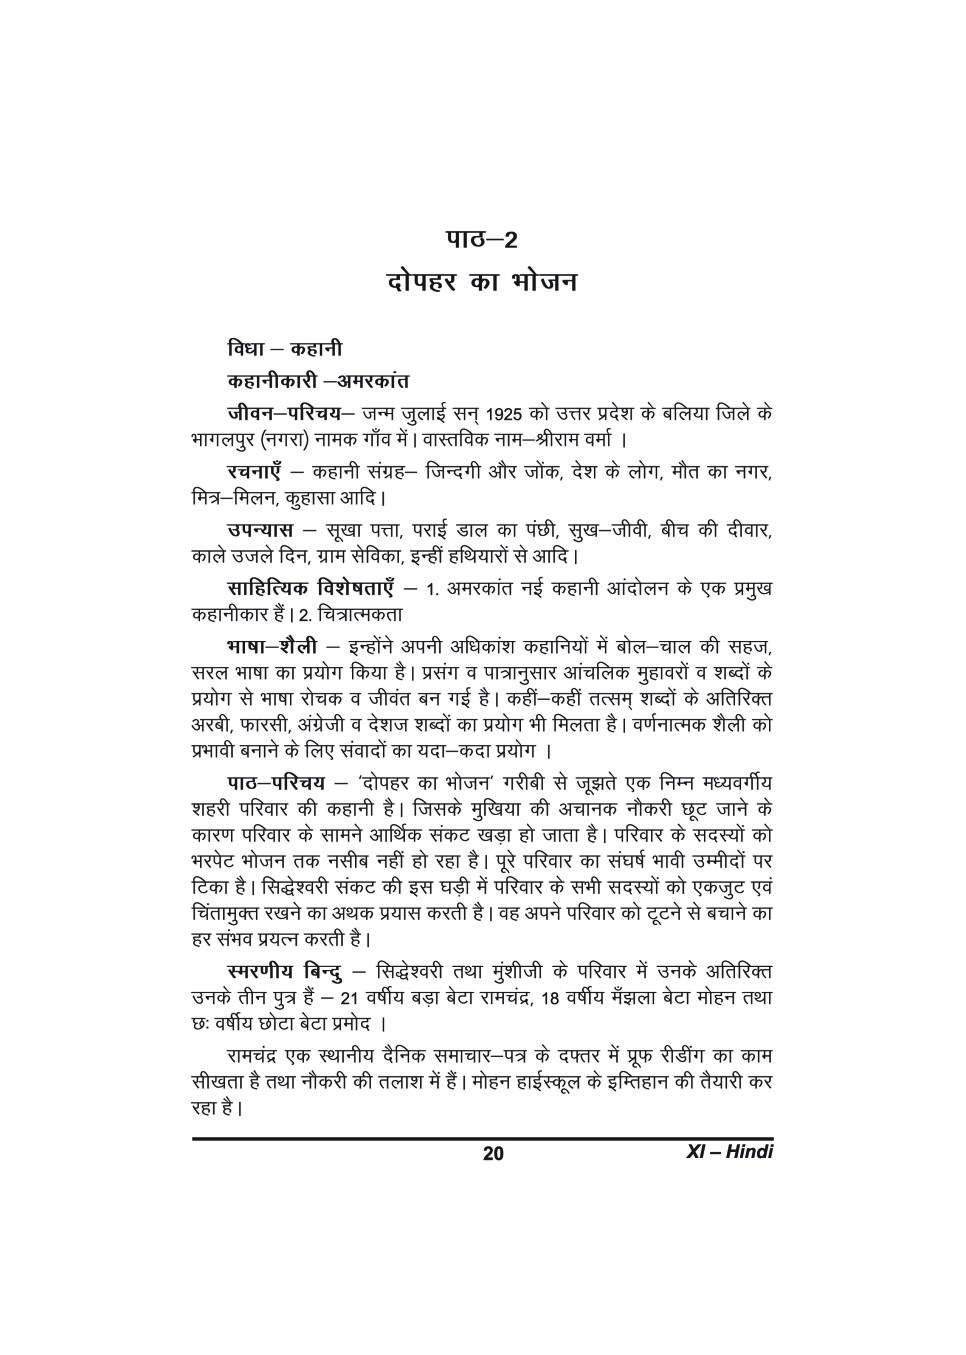 कक्षा 11 हिंदी के नोट्स - दोपहर का भोजन - Page 1